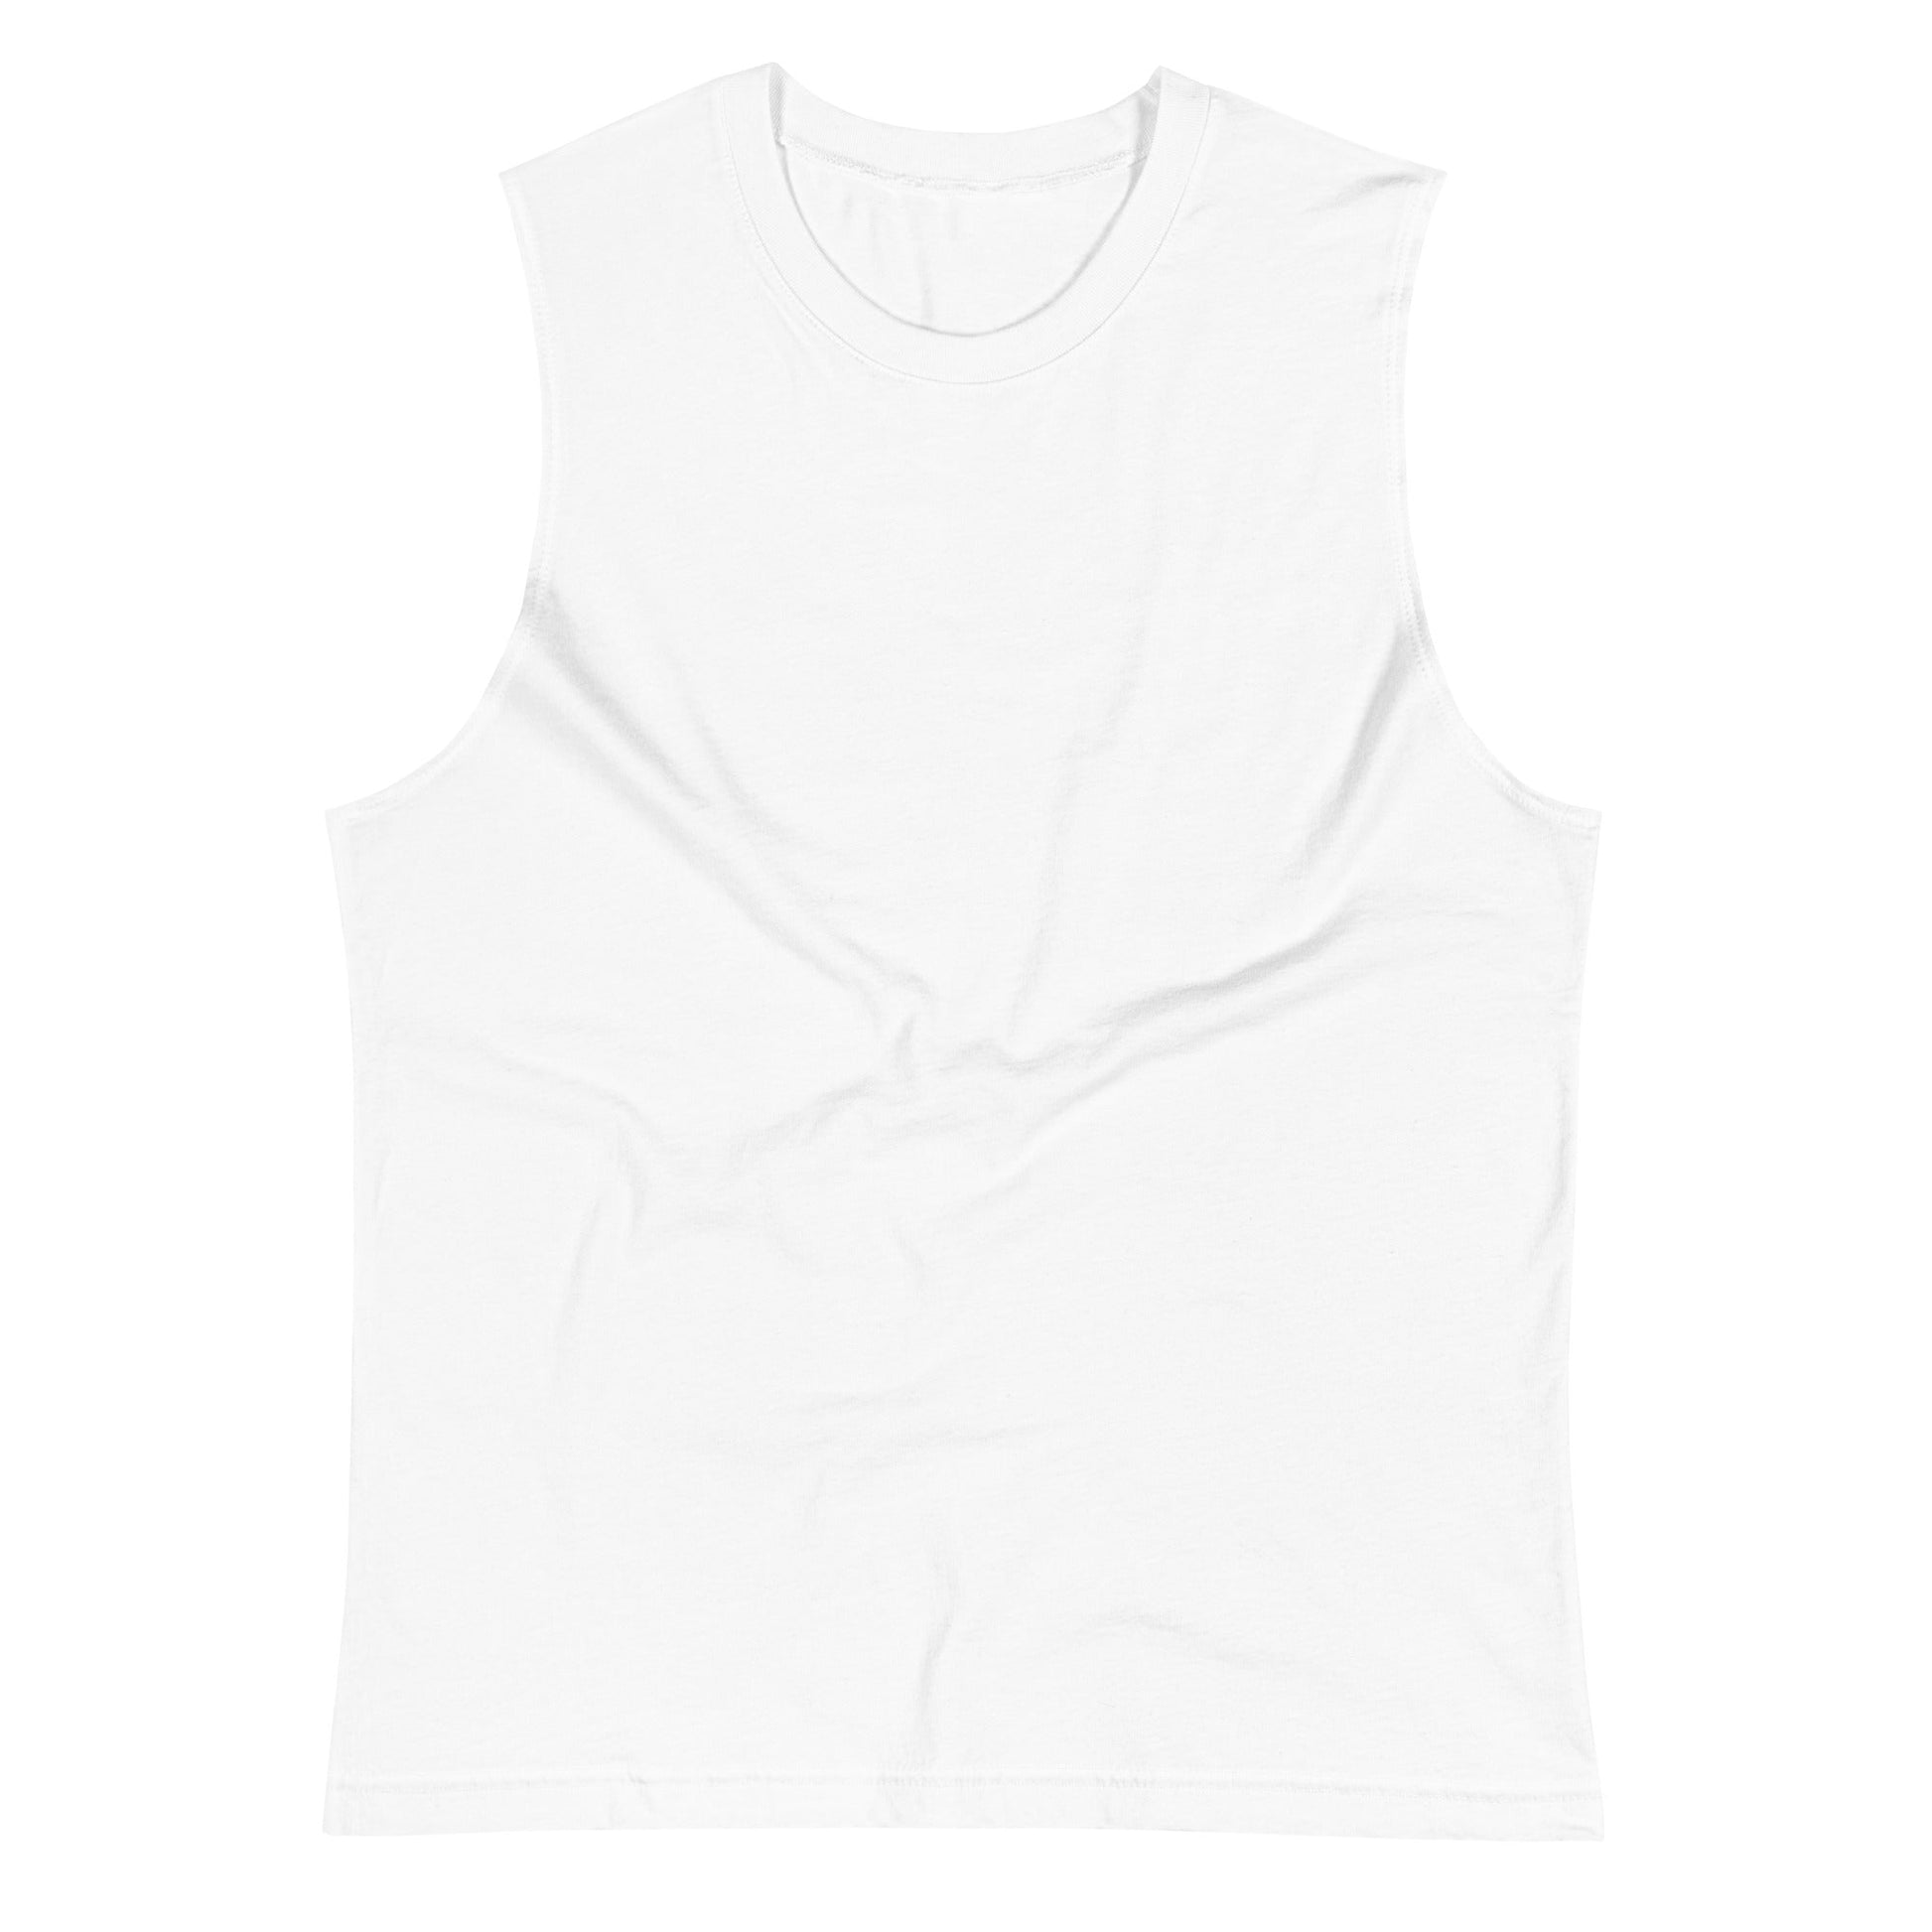 Camiseta Blanca de Algodón Sin Mangas- Elegancia y calidad en nuestra insignia. Descubre la perfección del algodón premium importado. Envíos Guatemala